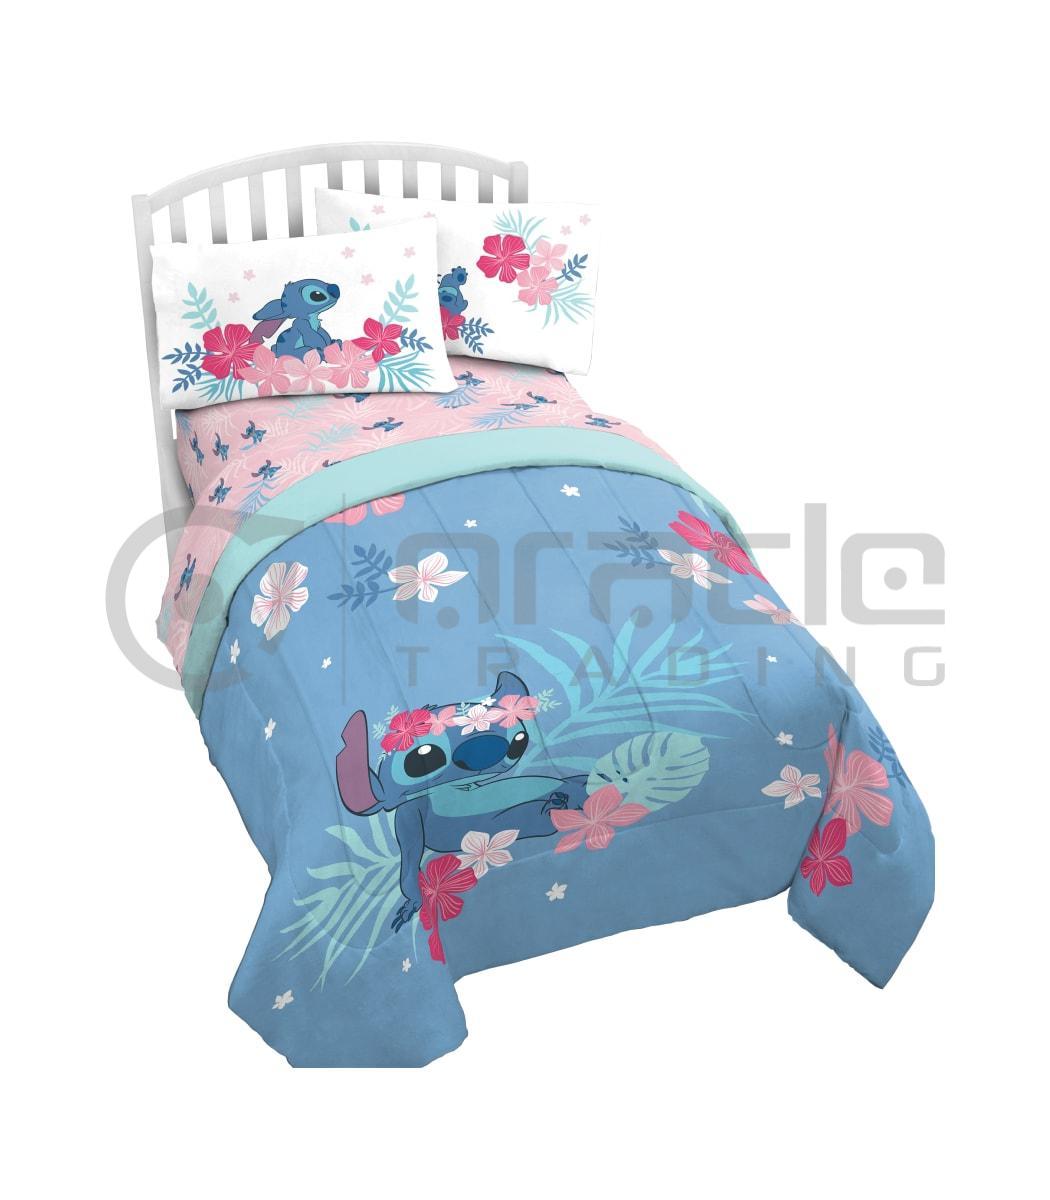 Lilo & Stitch Comforter Set